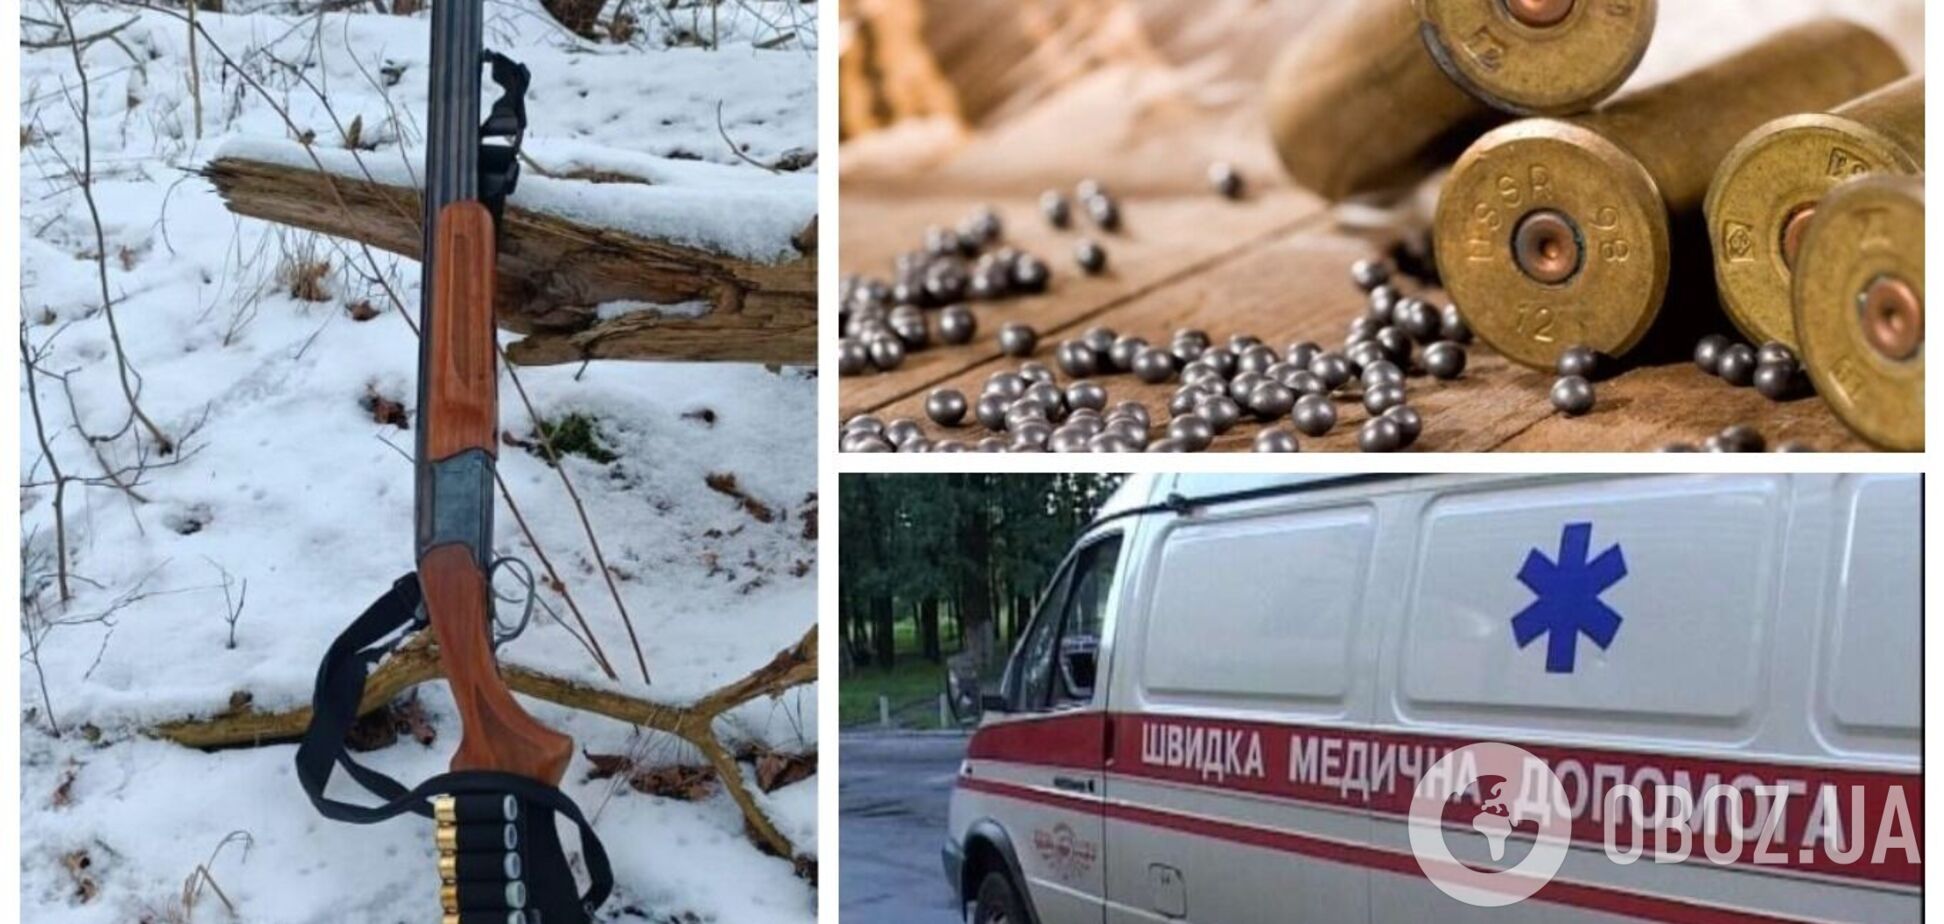 На Харківщині чоловік на полюванні випадково підстрелив знайомого: від поранень той помер. Фото